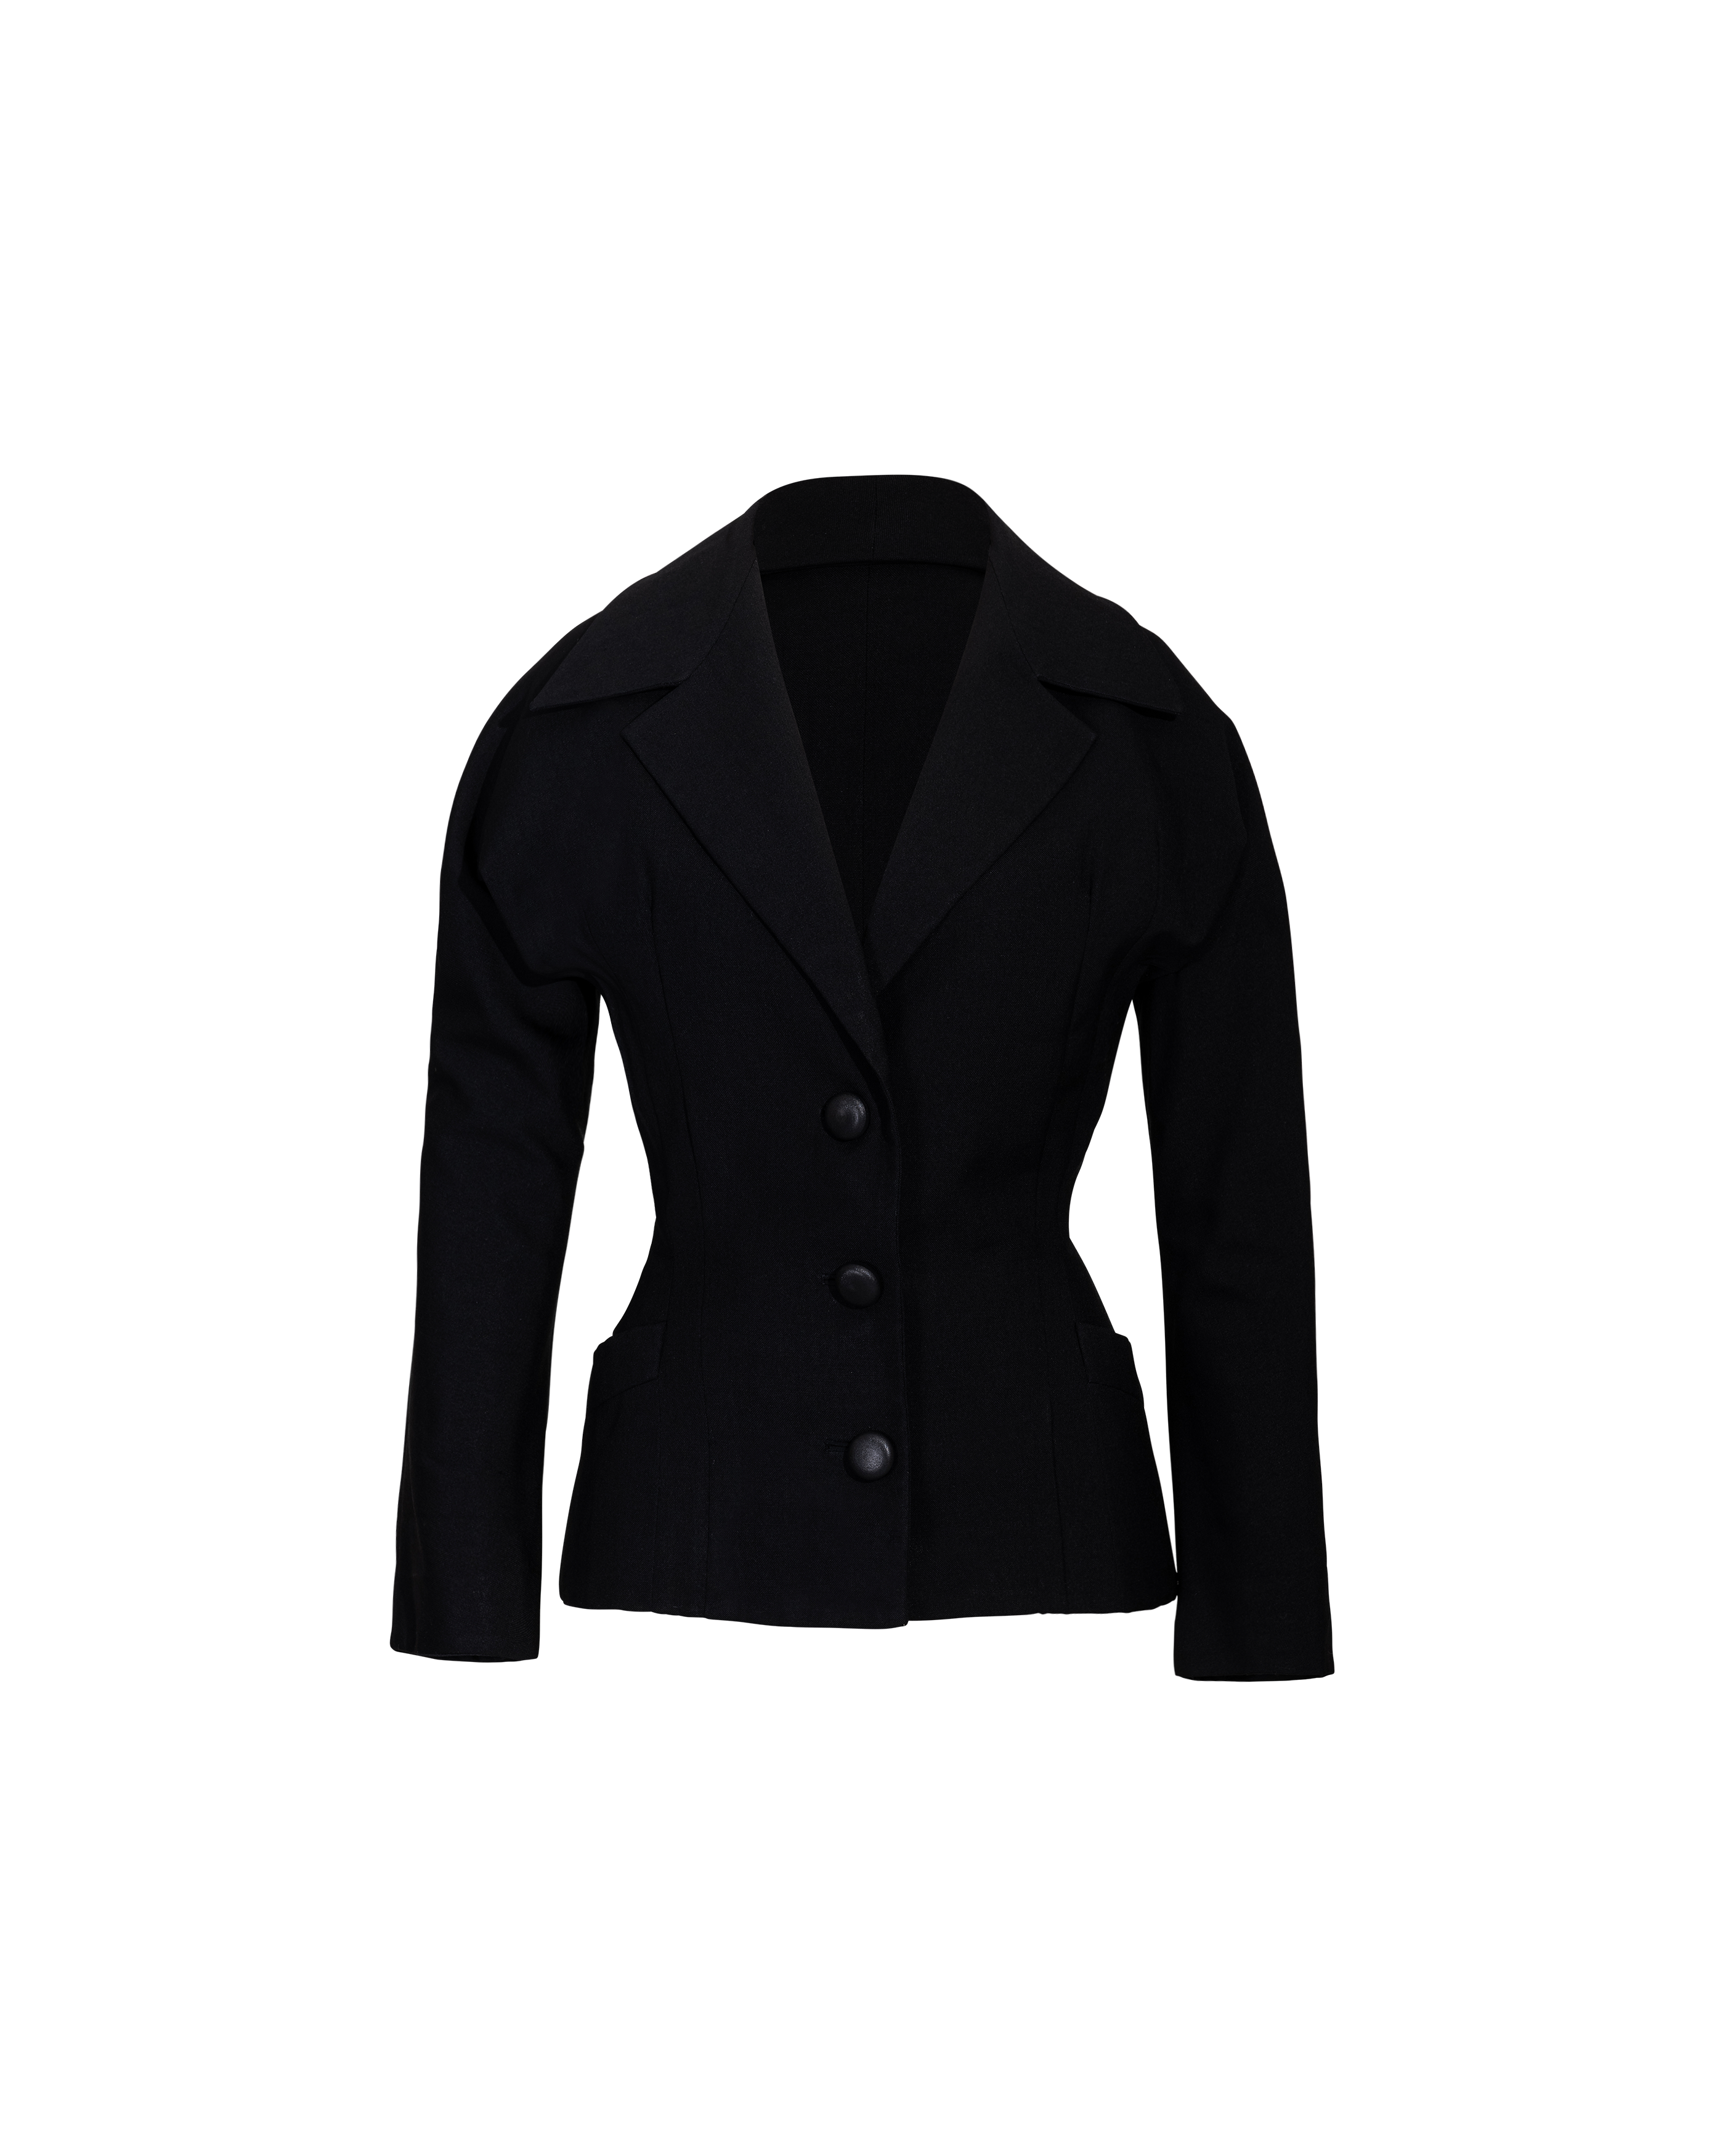 c. 1950 'New Look' Black Wool Jacket